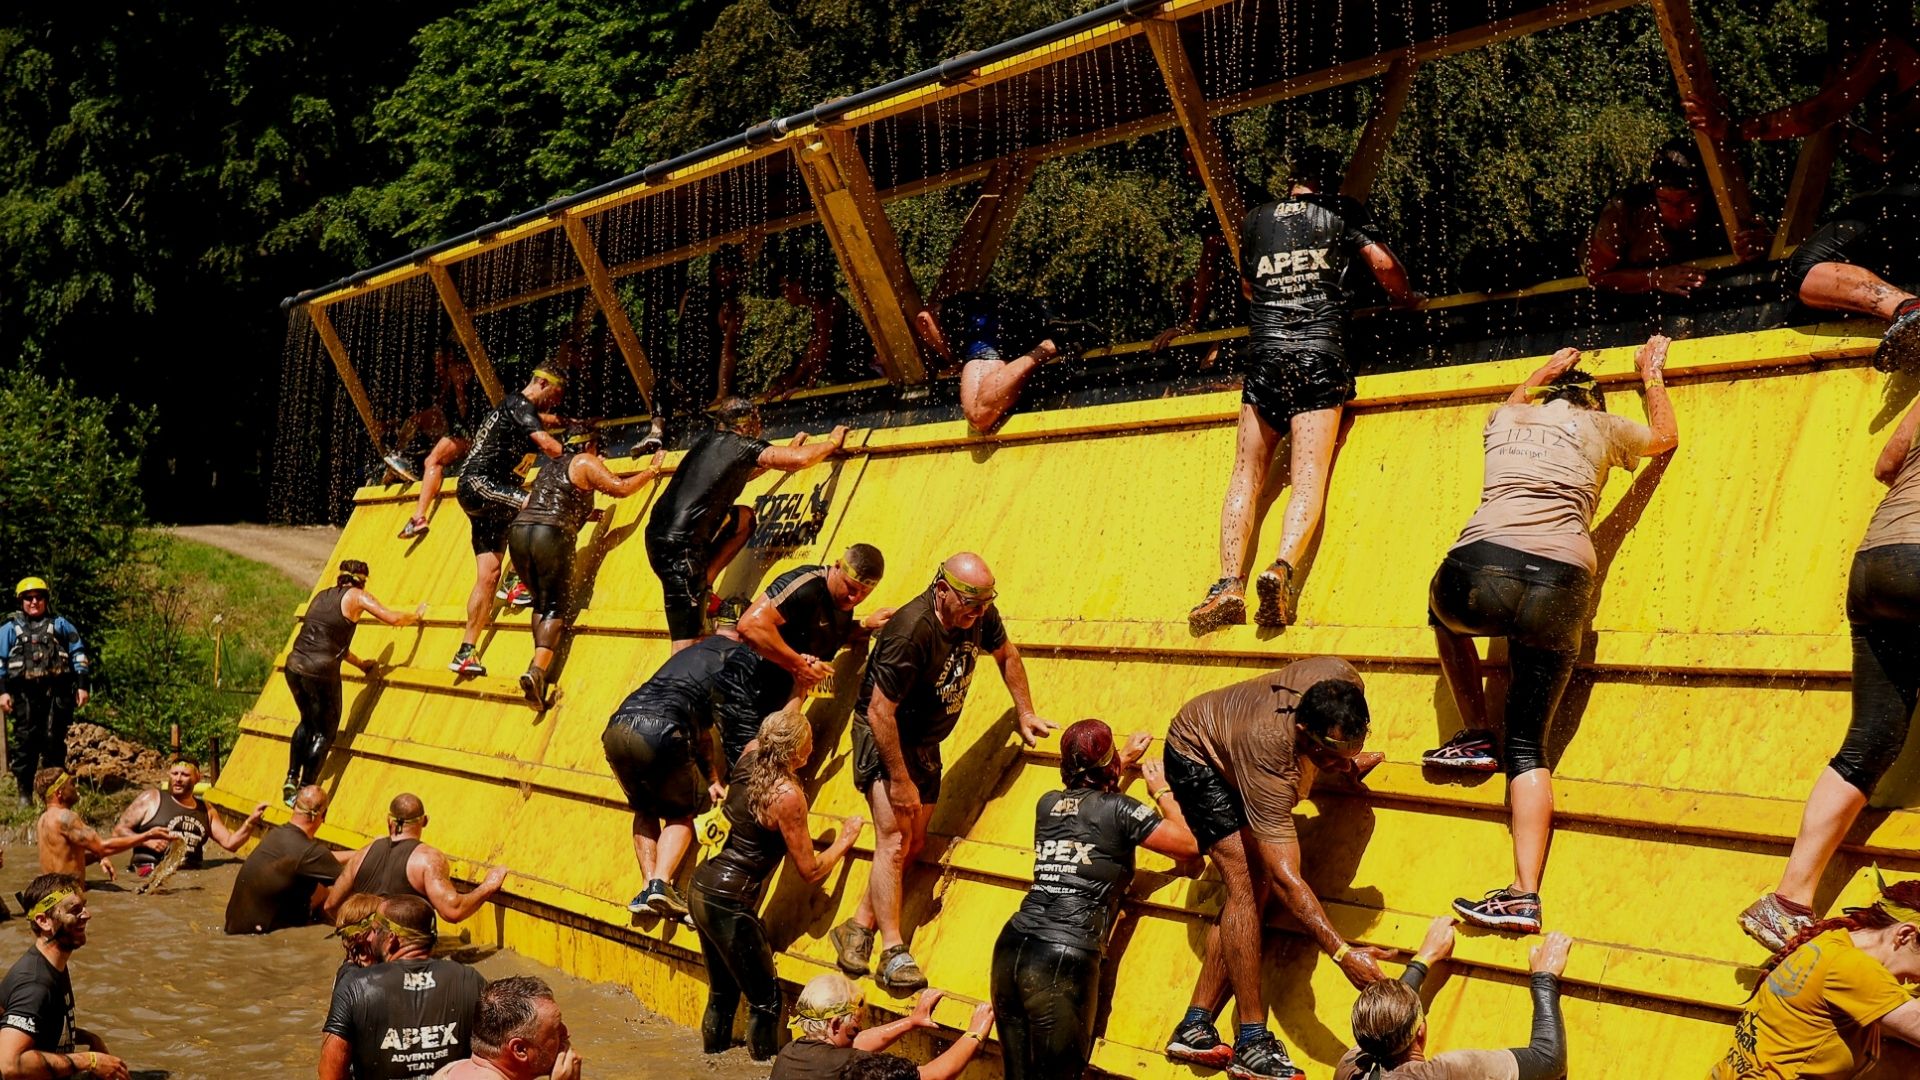 Competitors climb a high wall